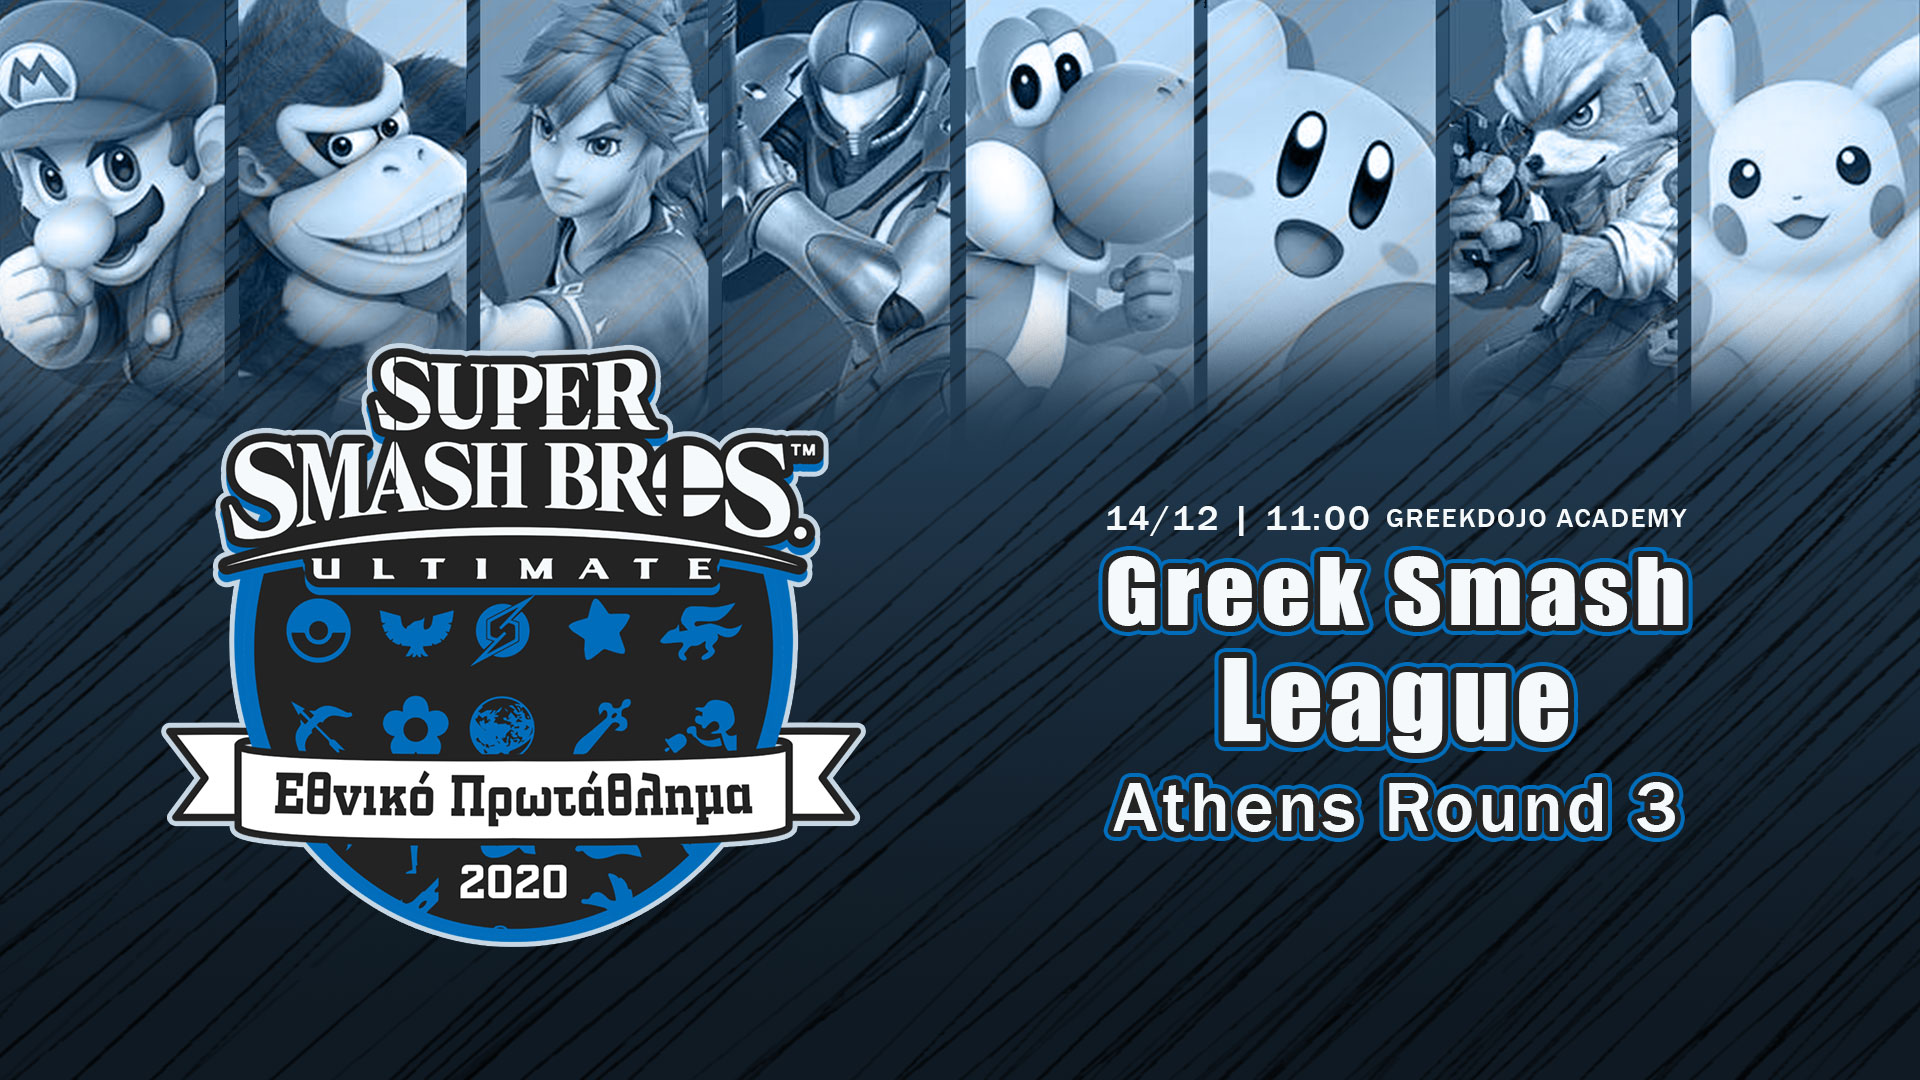 Greek Smash League 2020 Round 3 Athens